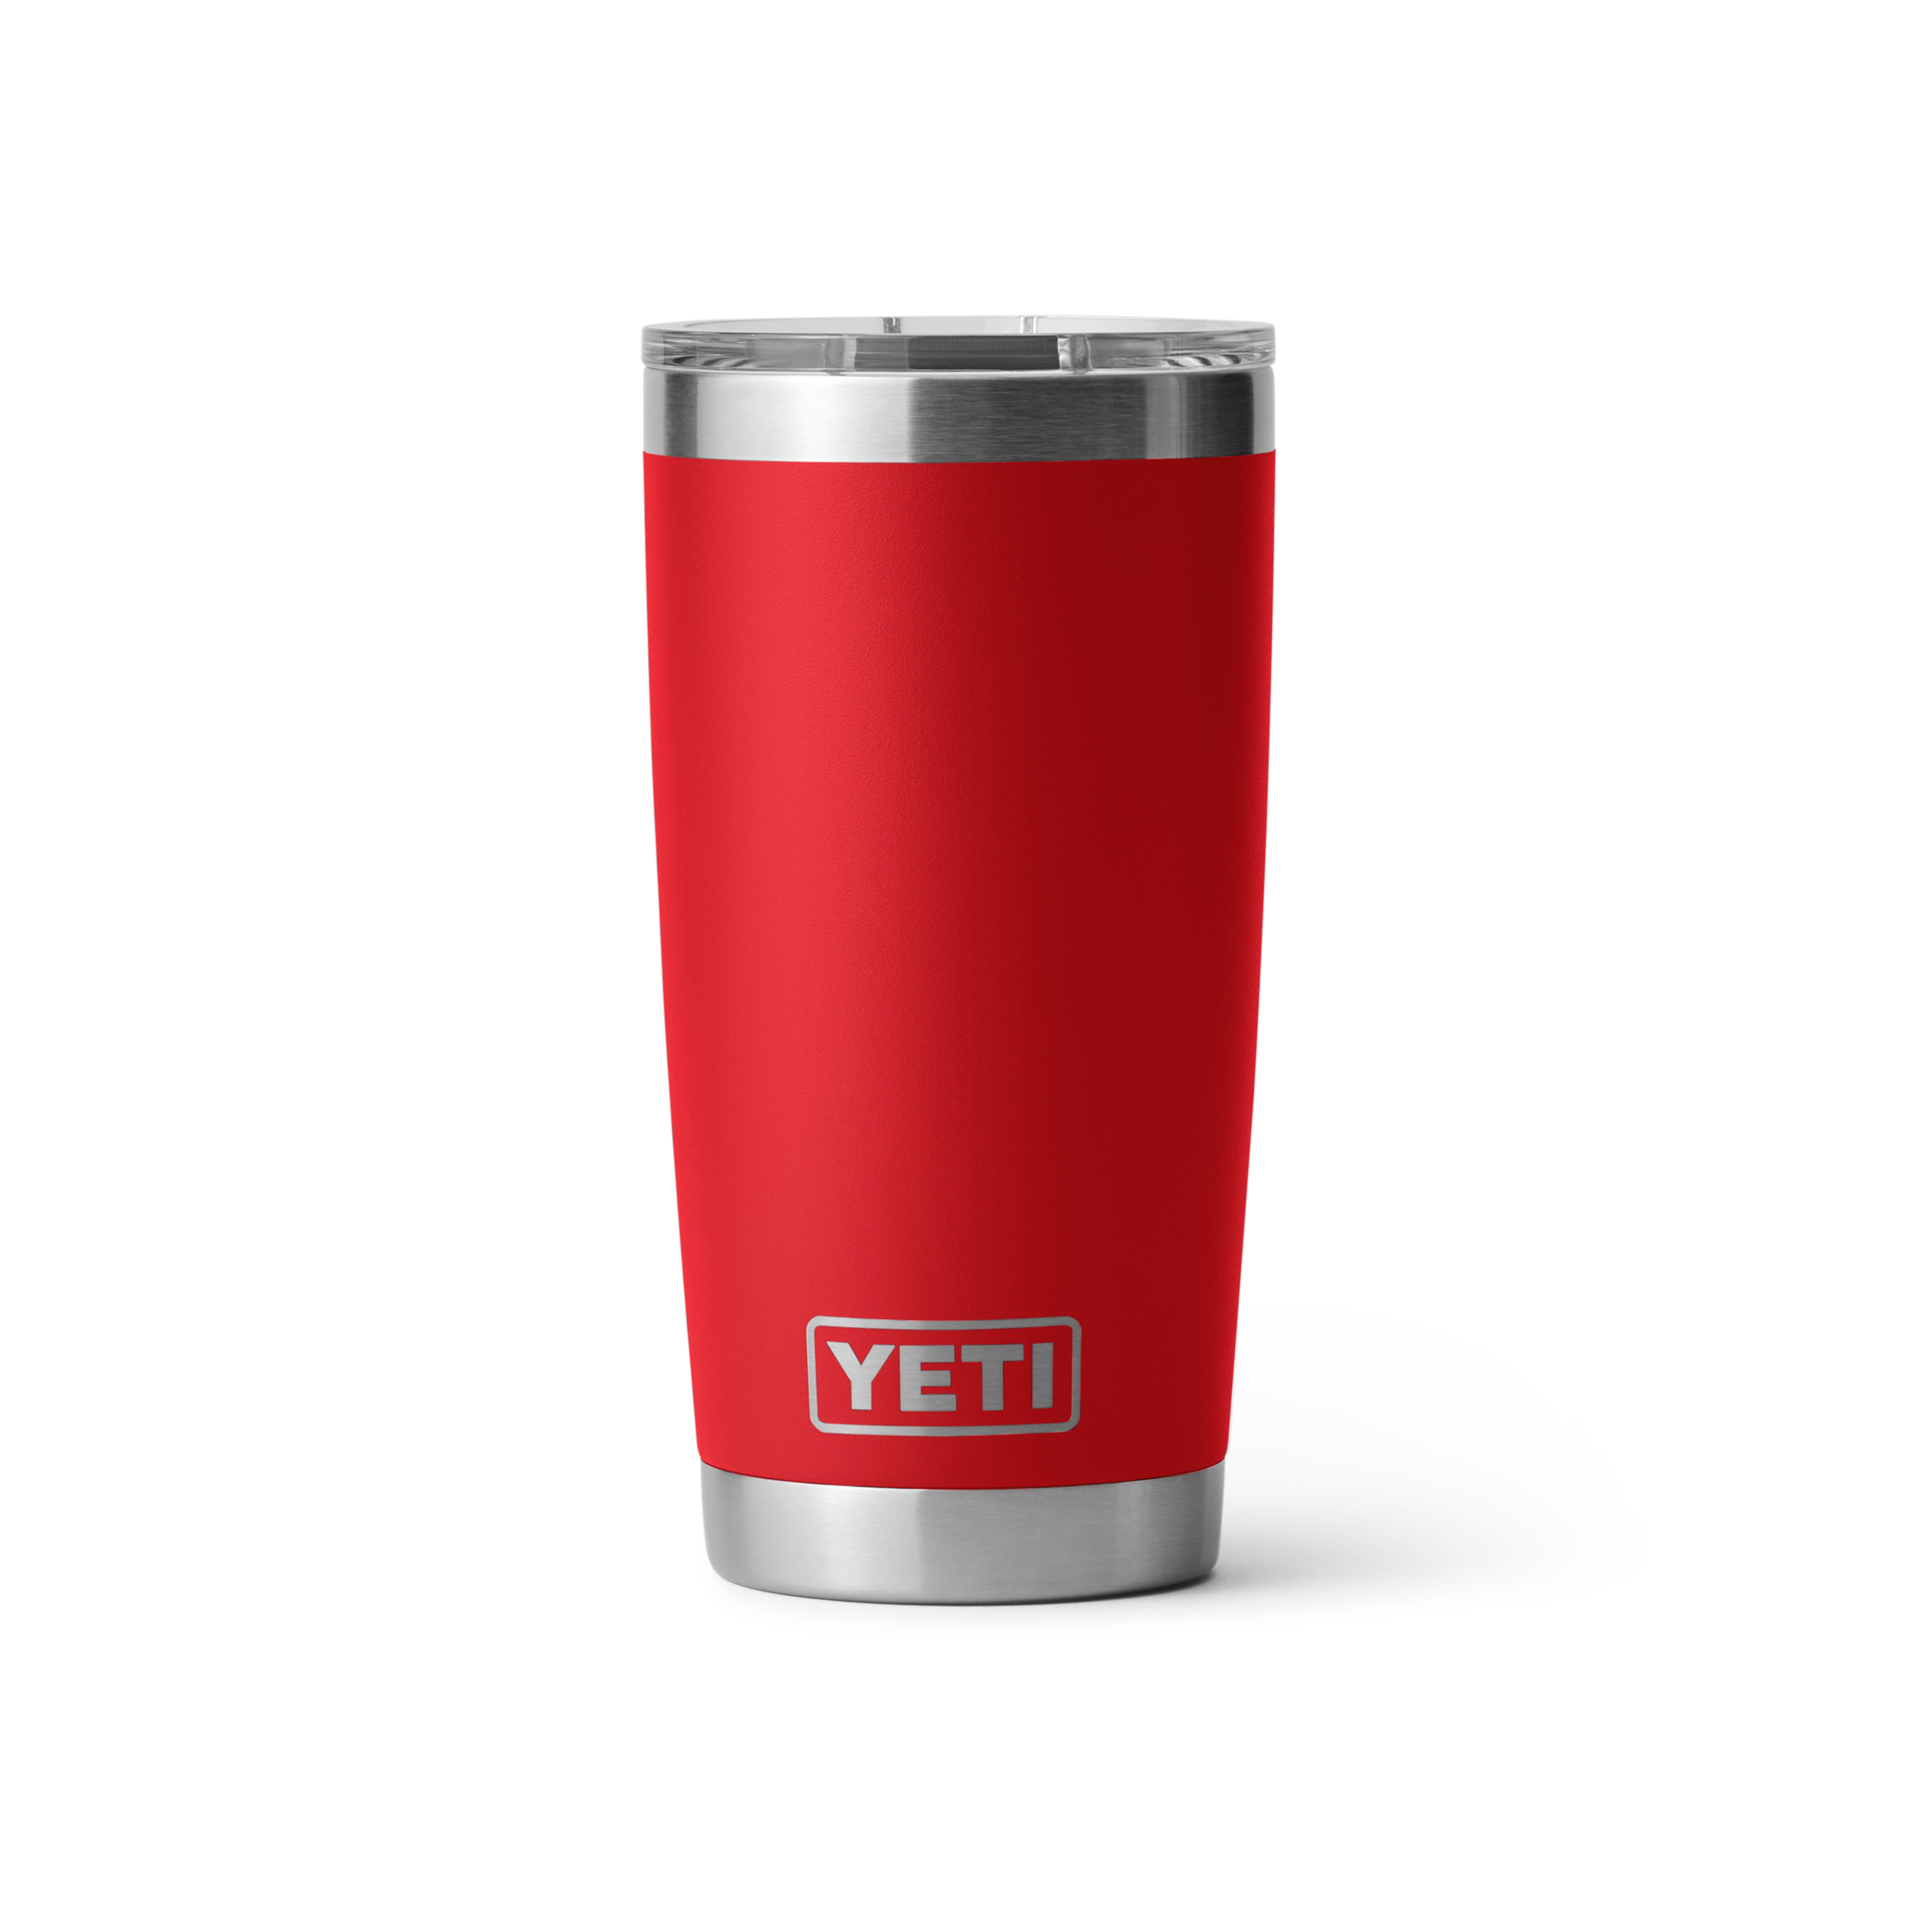 Custom Yeti Cup For Men - Shop on Pinterest